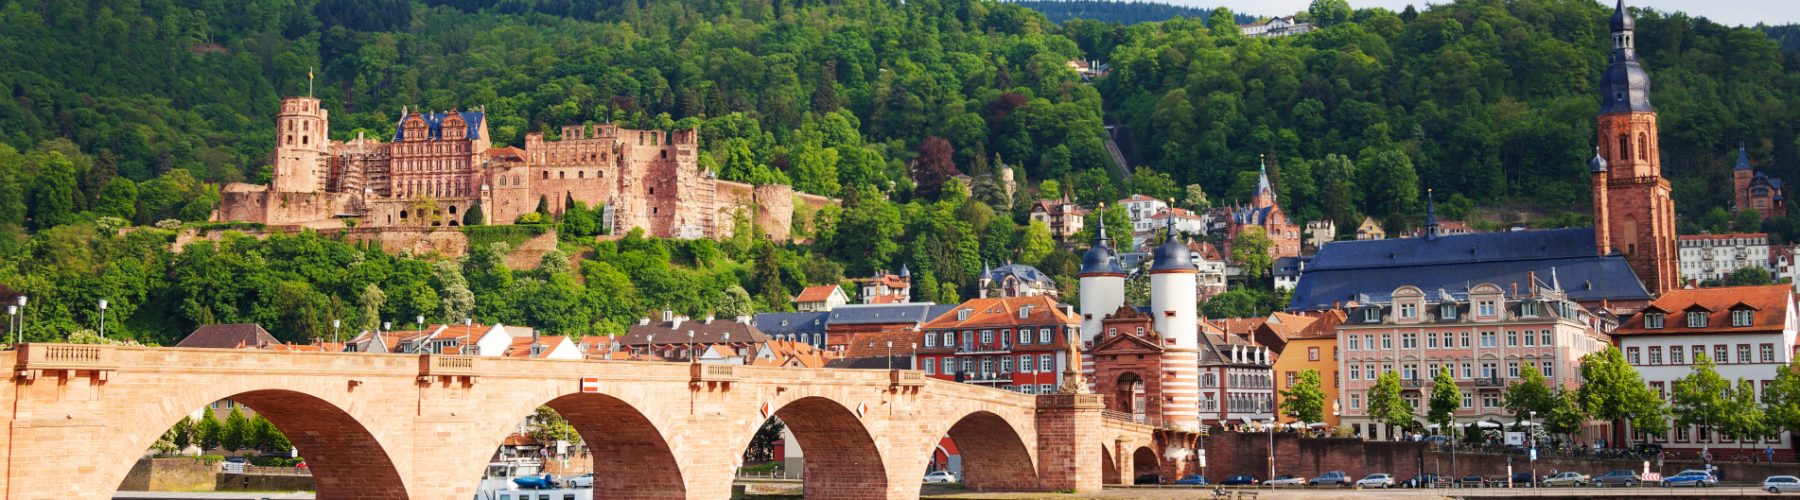 Blick auf die Stadt Heidelberg am Neckar in Deutschland